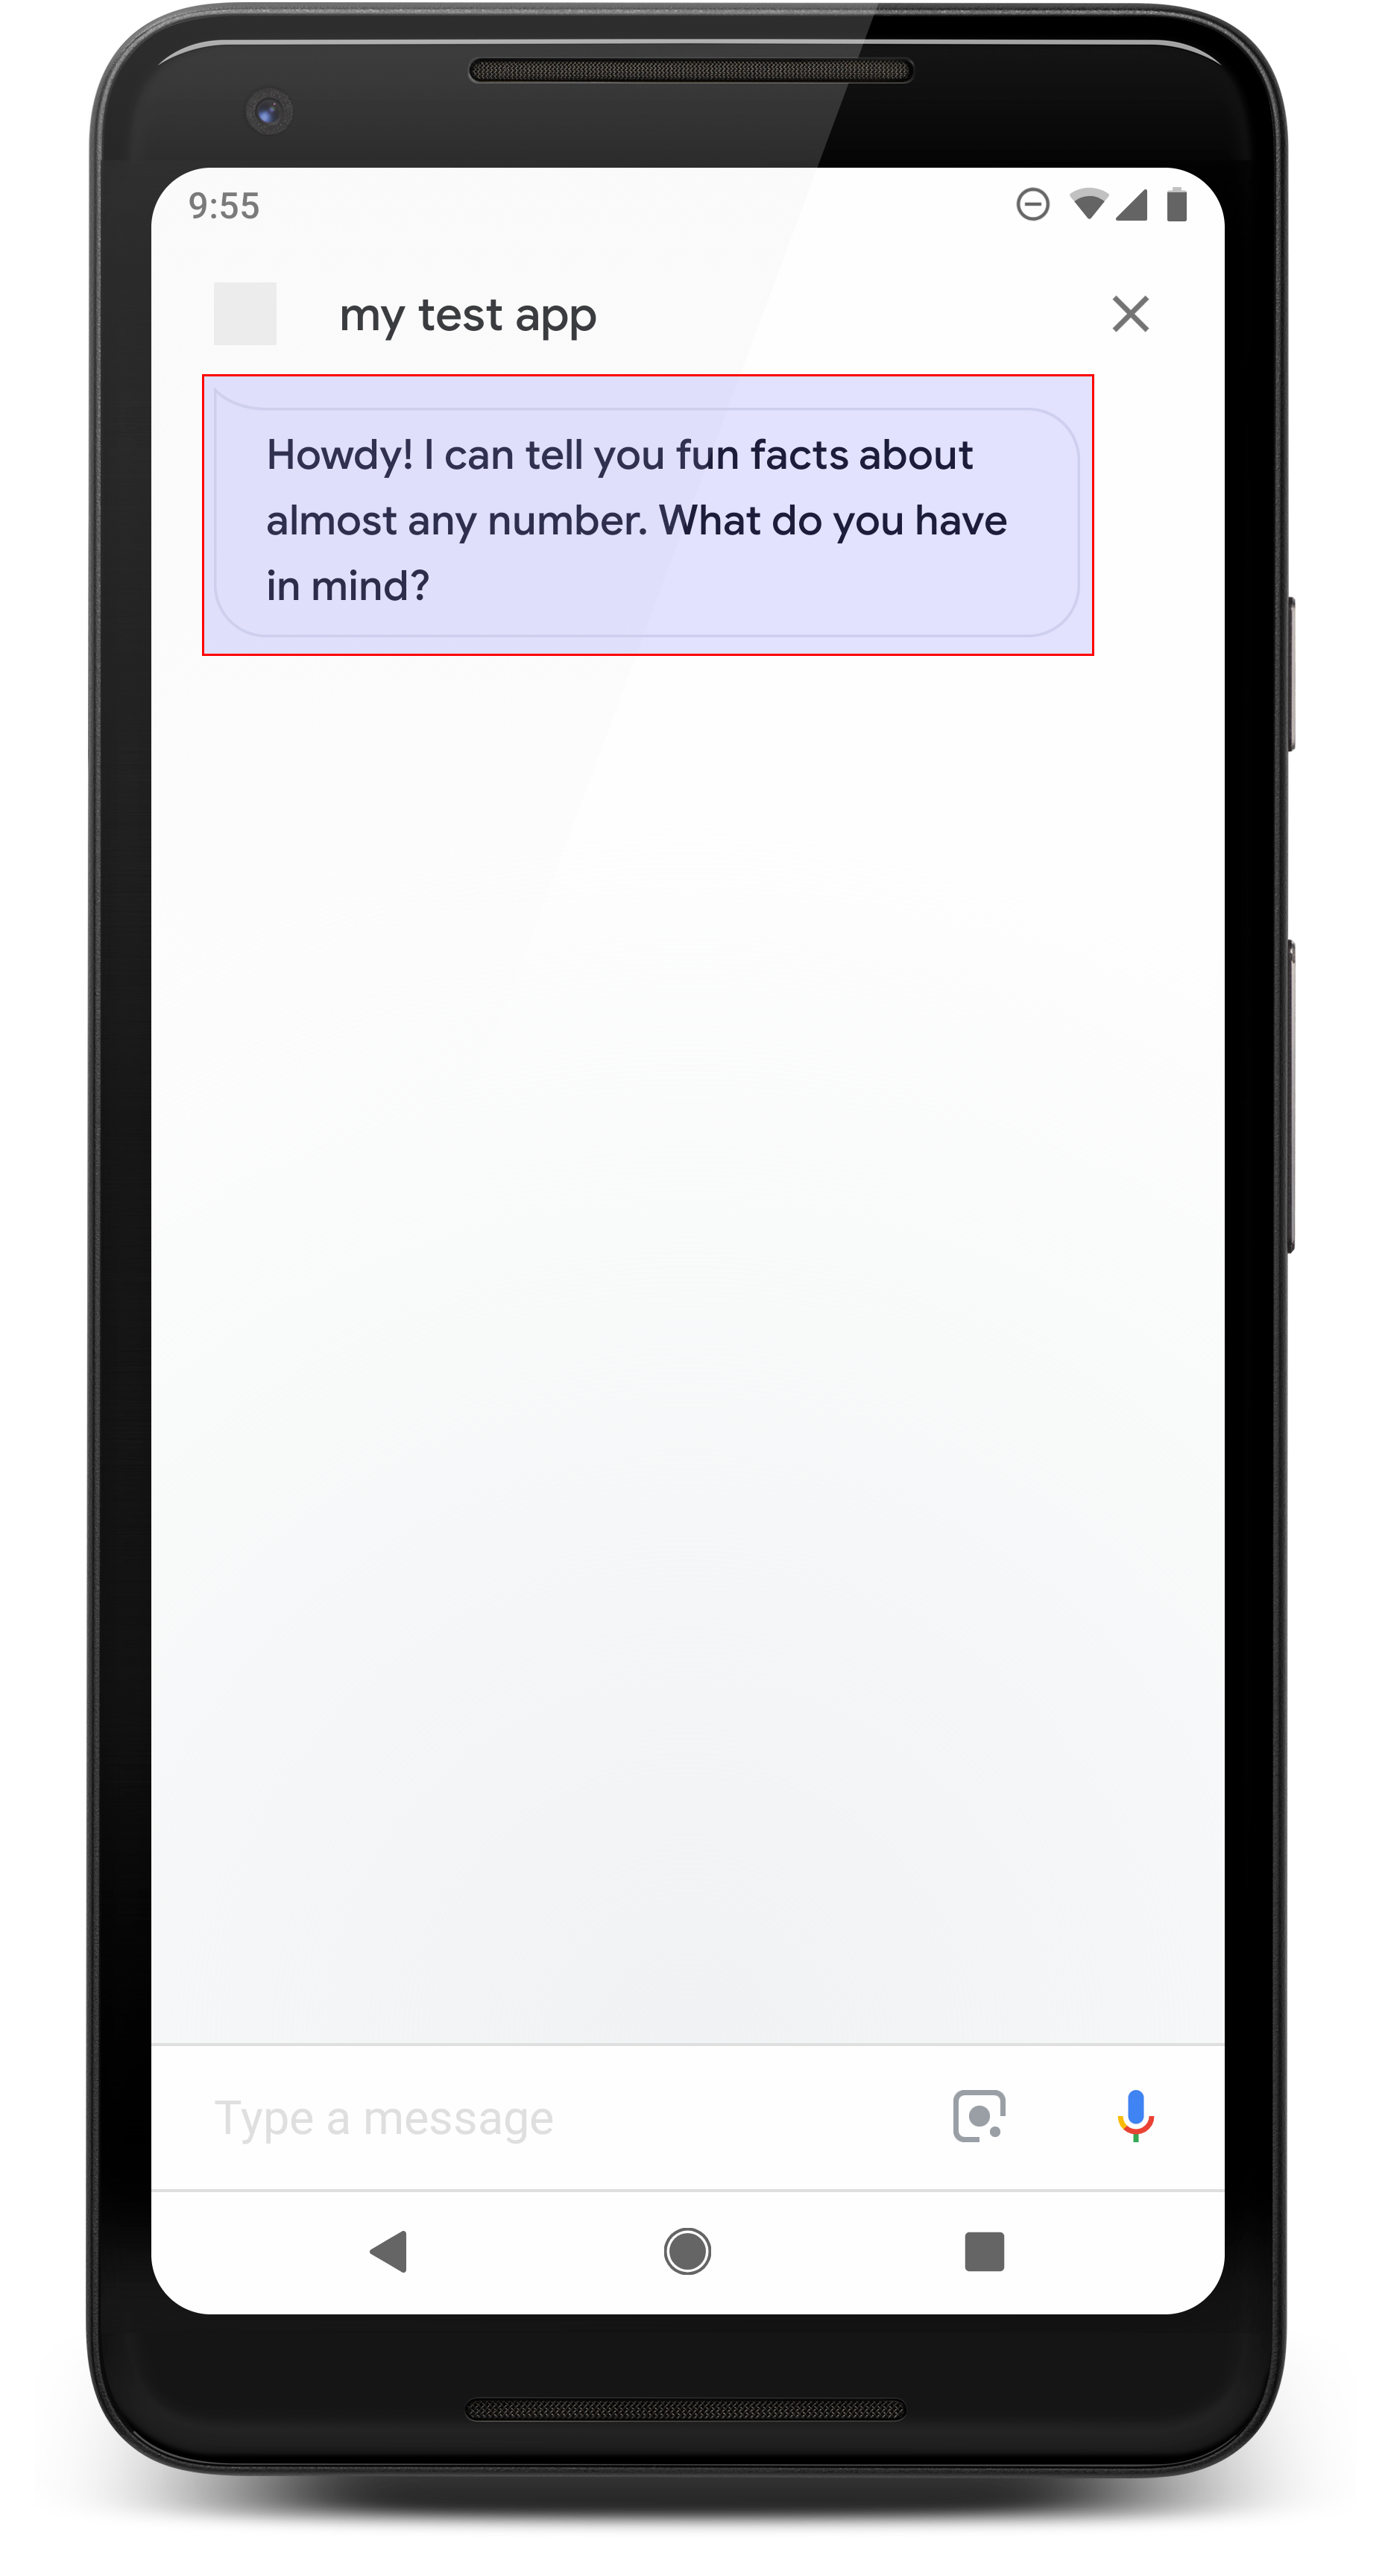 Ejemplo de una respuesta simple en un dispositivo móvil